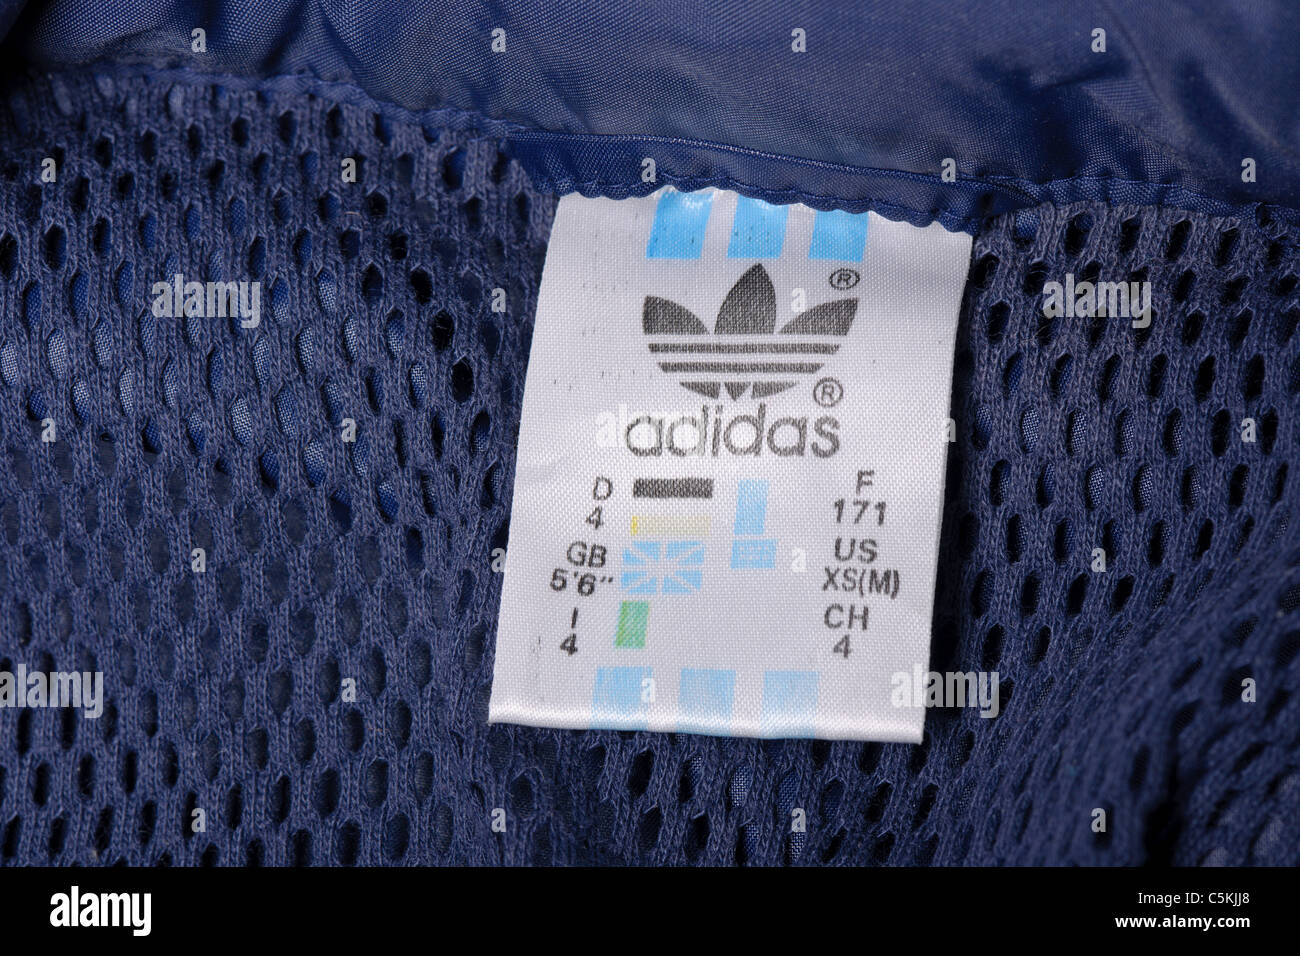 Etiqueta Adidas Fotos e Imágenes de stock - Alamy